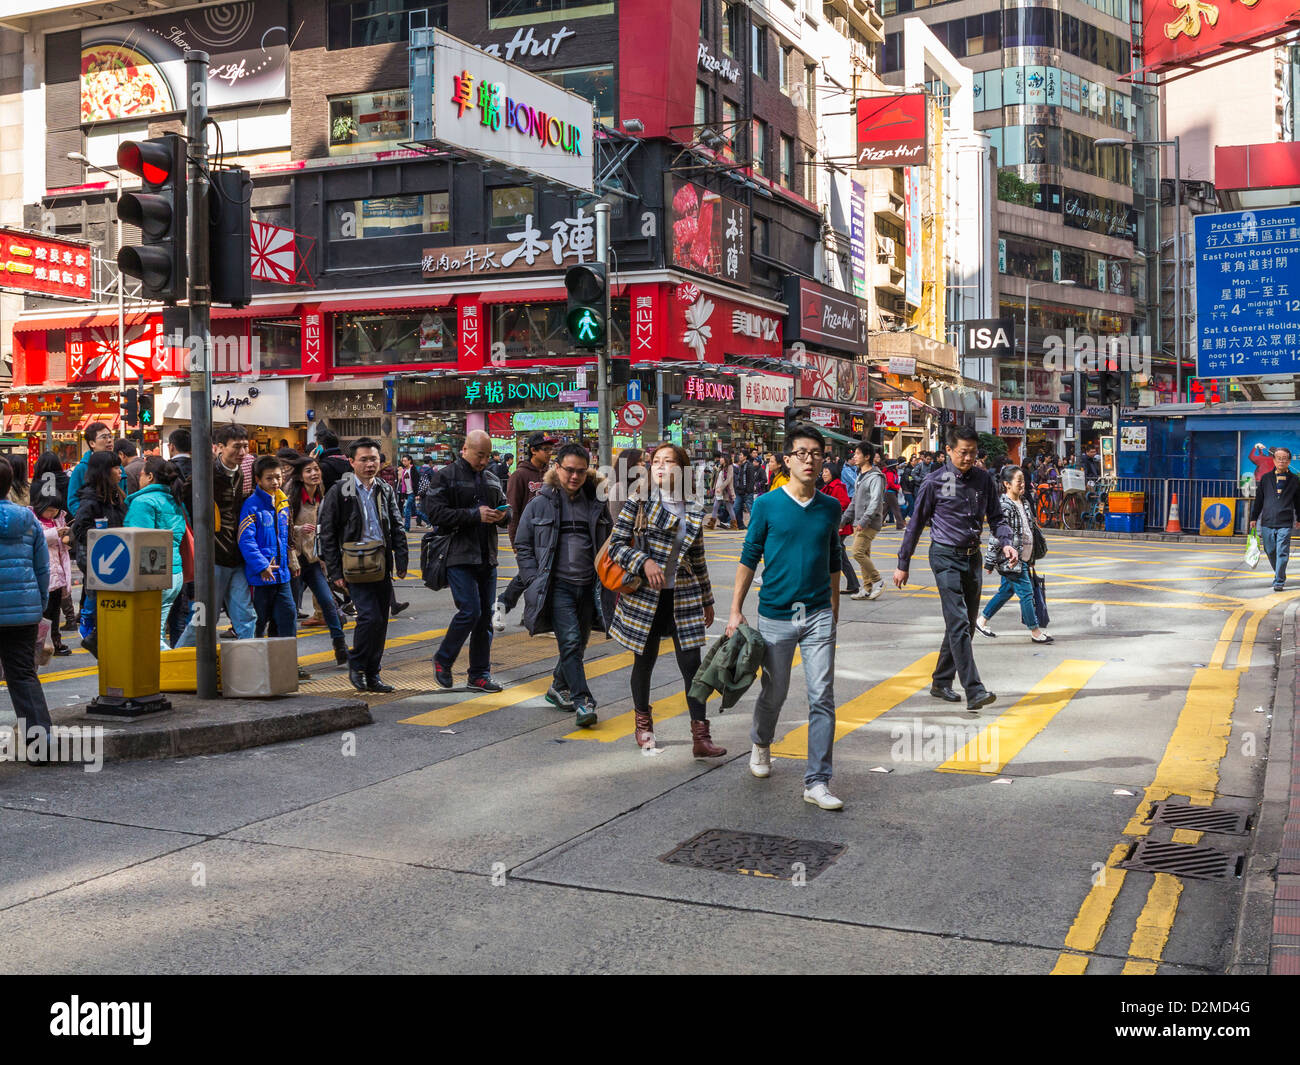 Scène de rue à Hong Kong - Causeway Bay dans la zone encombrée de gens dans les rues Banque D'Images